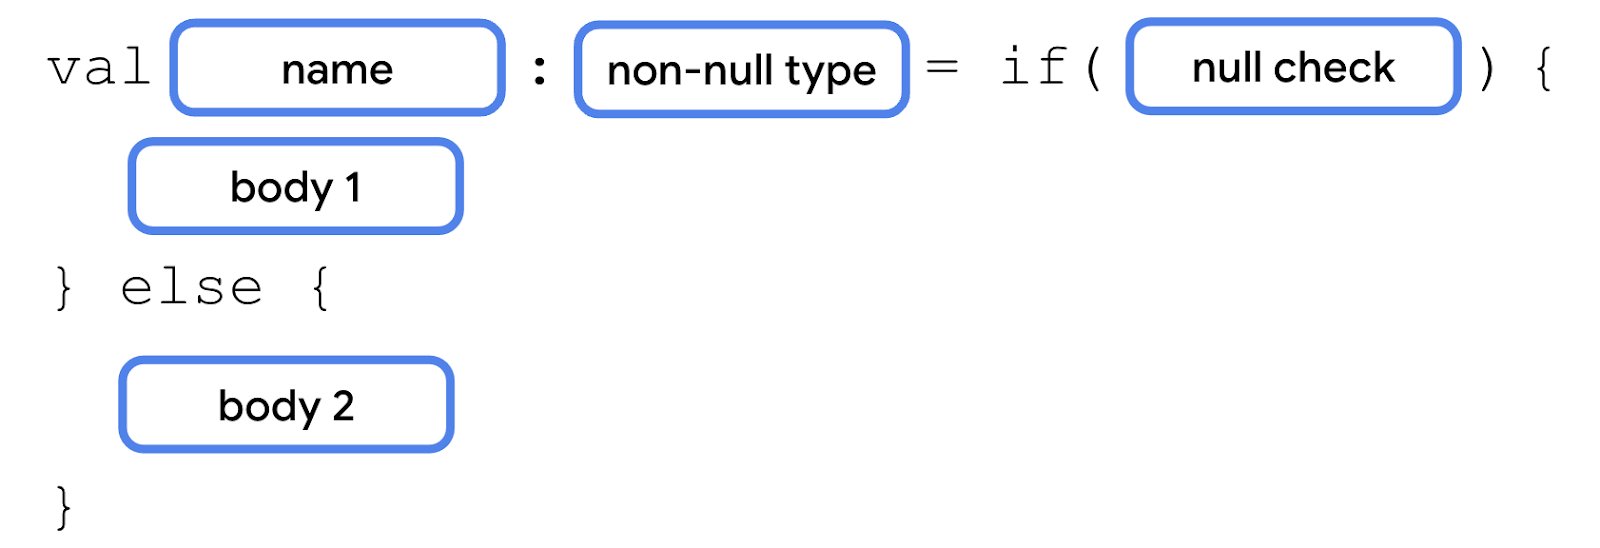 Sơ đồ mô tả biểu thức if/else với từ khóa val theo sau là khối name (tên), dấu hai chấm và khối non-null type (loại không rỗng), dấu bằng, từ khoá if, dấu ngoặc đơn có câu lệnh điều kiện bên trong, một cặp dấu ngoặc nhọn có body 1 (nội dung 1) bên trong, một từ khoá else (khác) với một cặp dấu ngoặc nhọn và một khối body 2 (nội dung 2) bên trong.